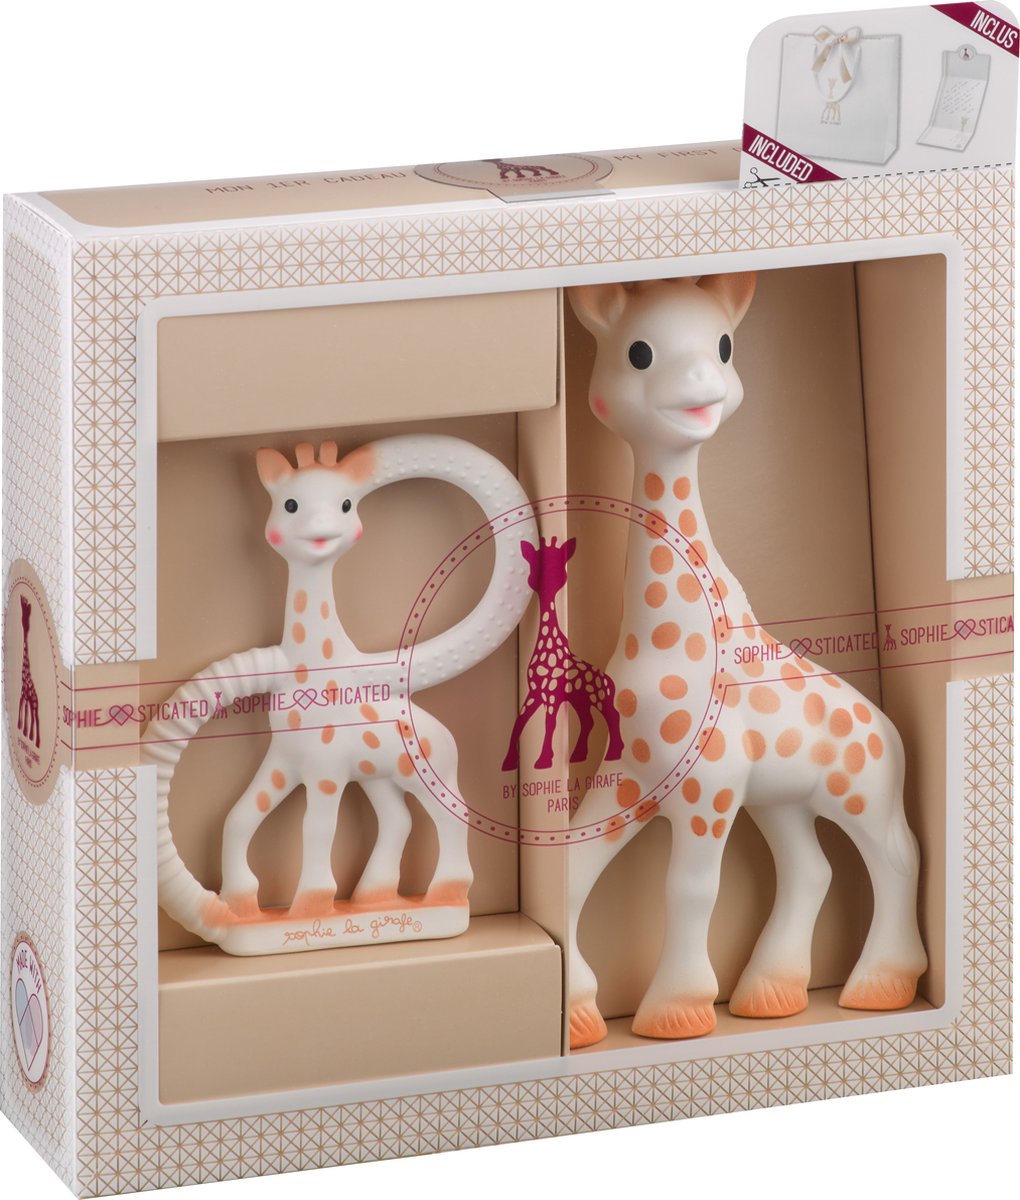 Sophie de giraf Sophiesticated Cadeauset - Baby speelgoed - Sophie de giraf & So Pure bijtring - Kraamcadeau – Babyshower cadeau - 4-Delig - Sophie de Giraf